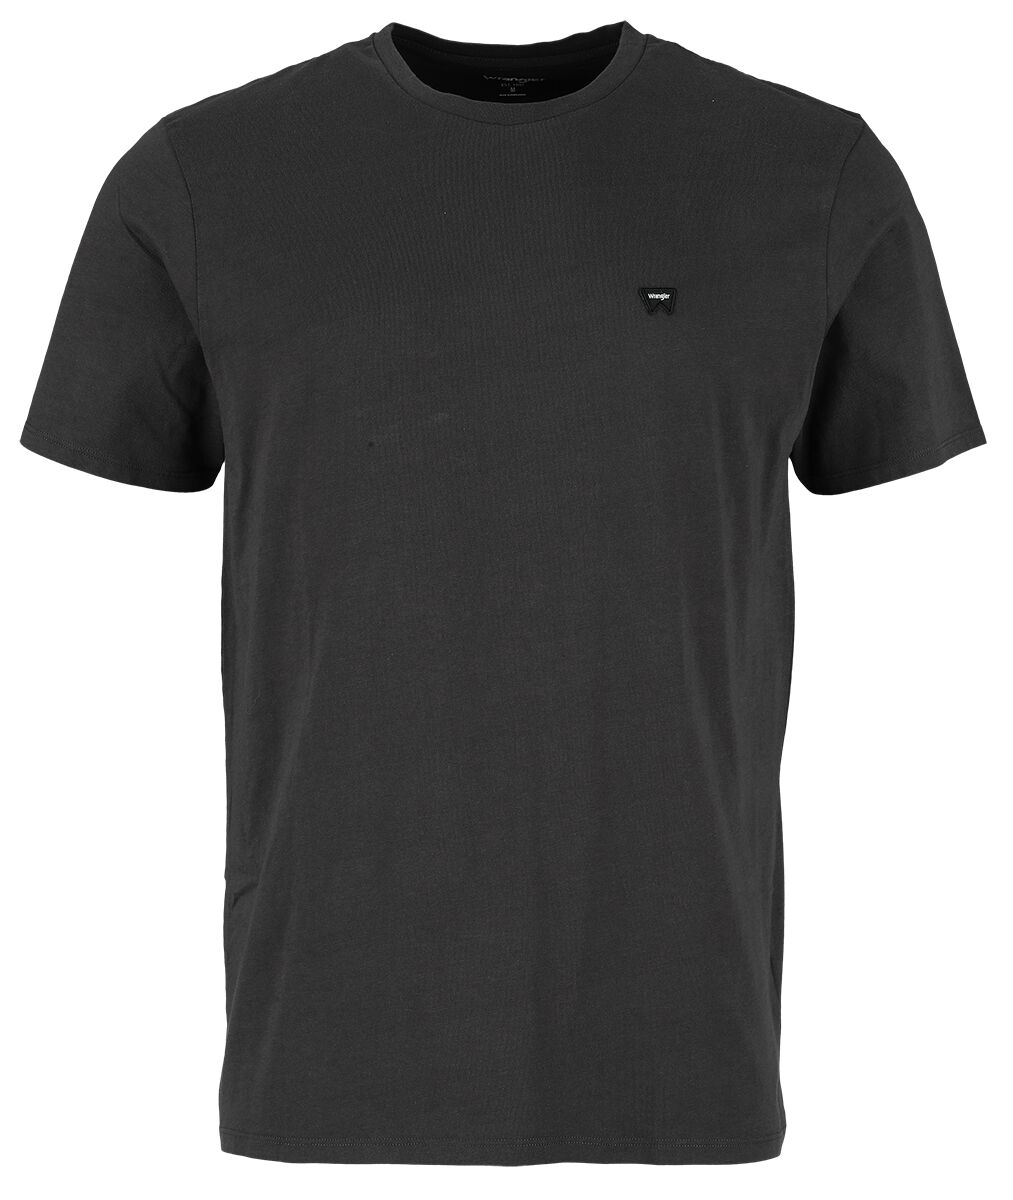 Wrangler T-Shirt - Sign Off Tee Faded Black - S bis XXL - für Männer - Größe XL - schwarz